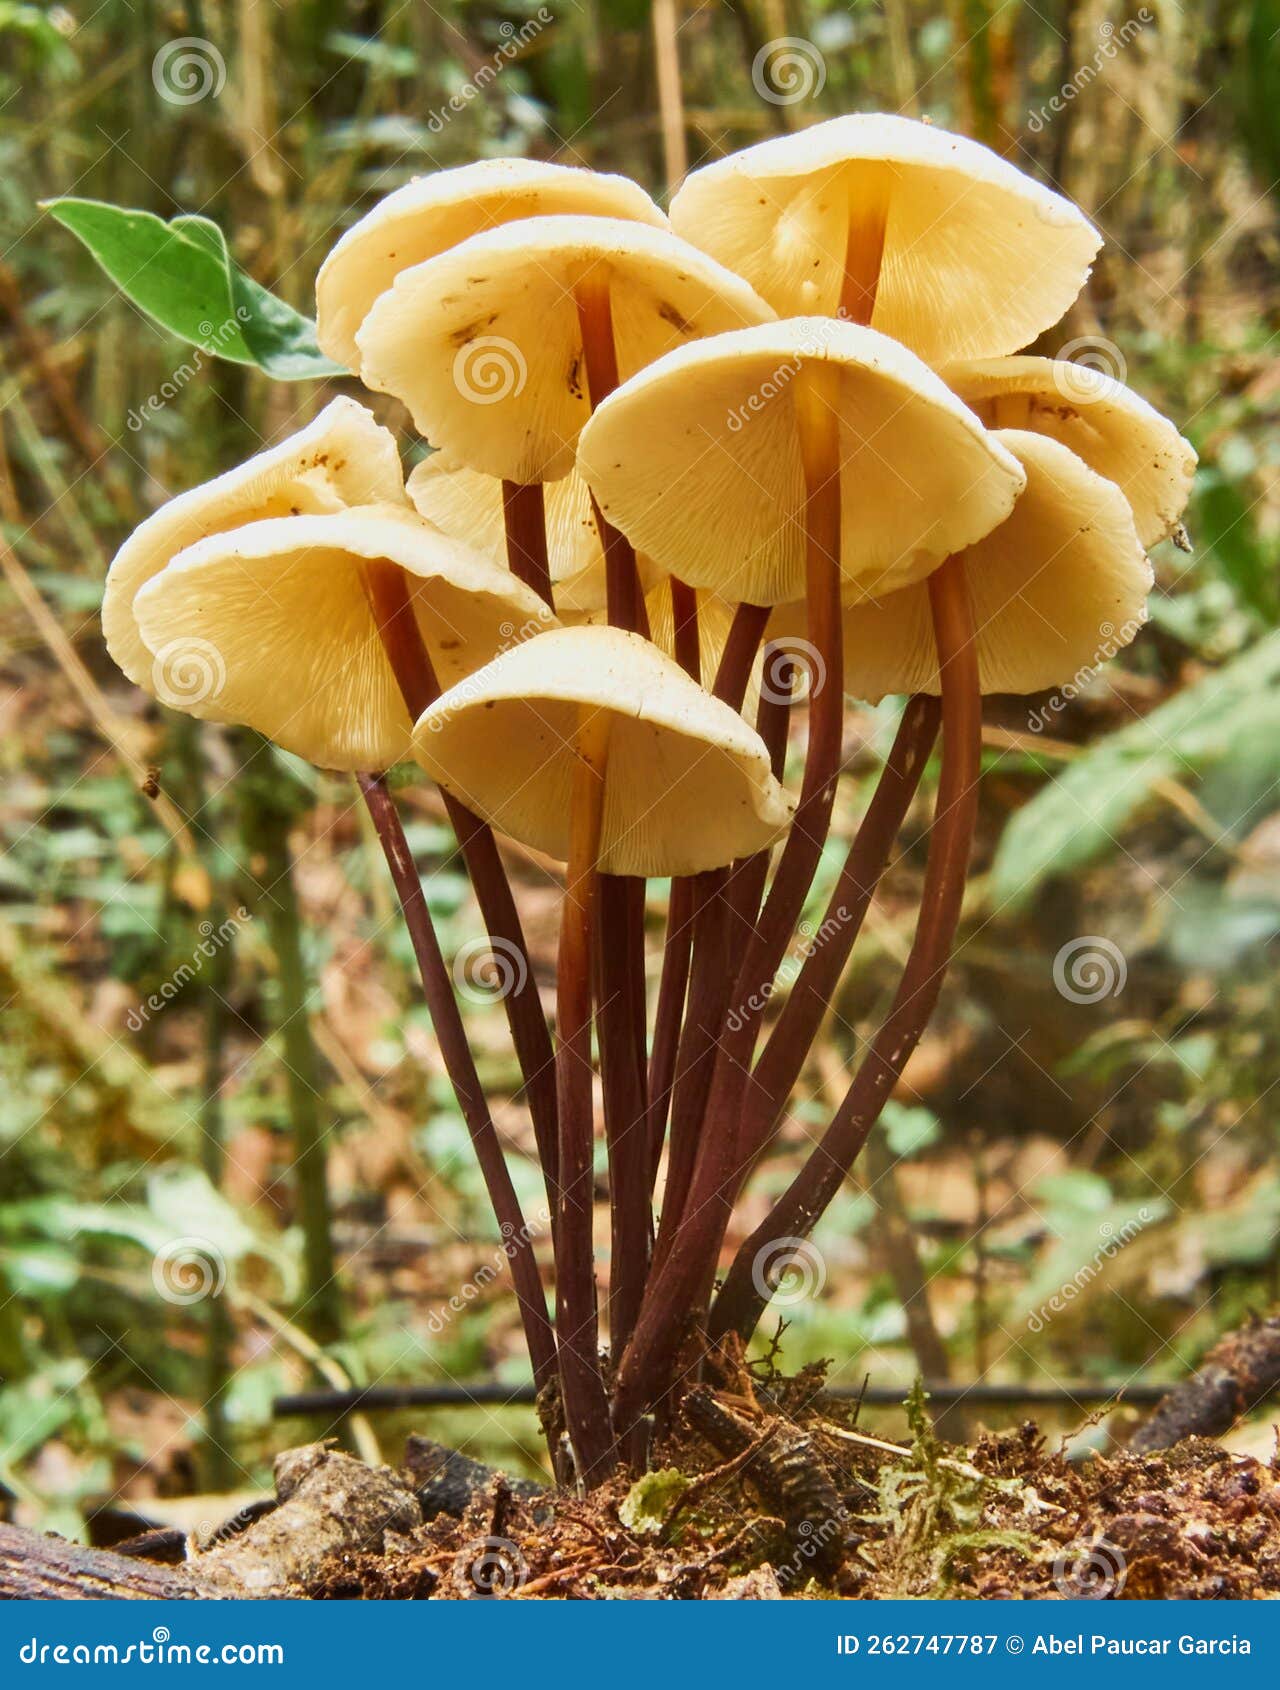 contrapicado amazonian mushrooms